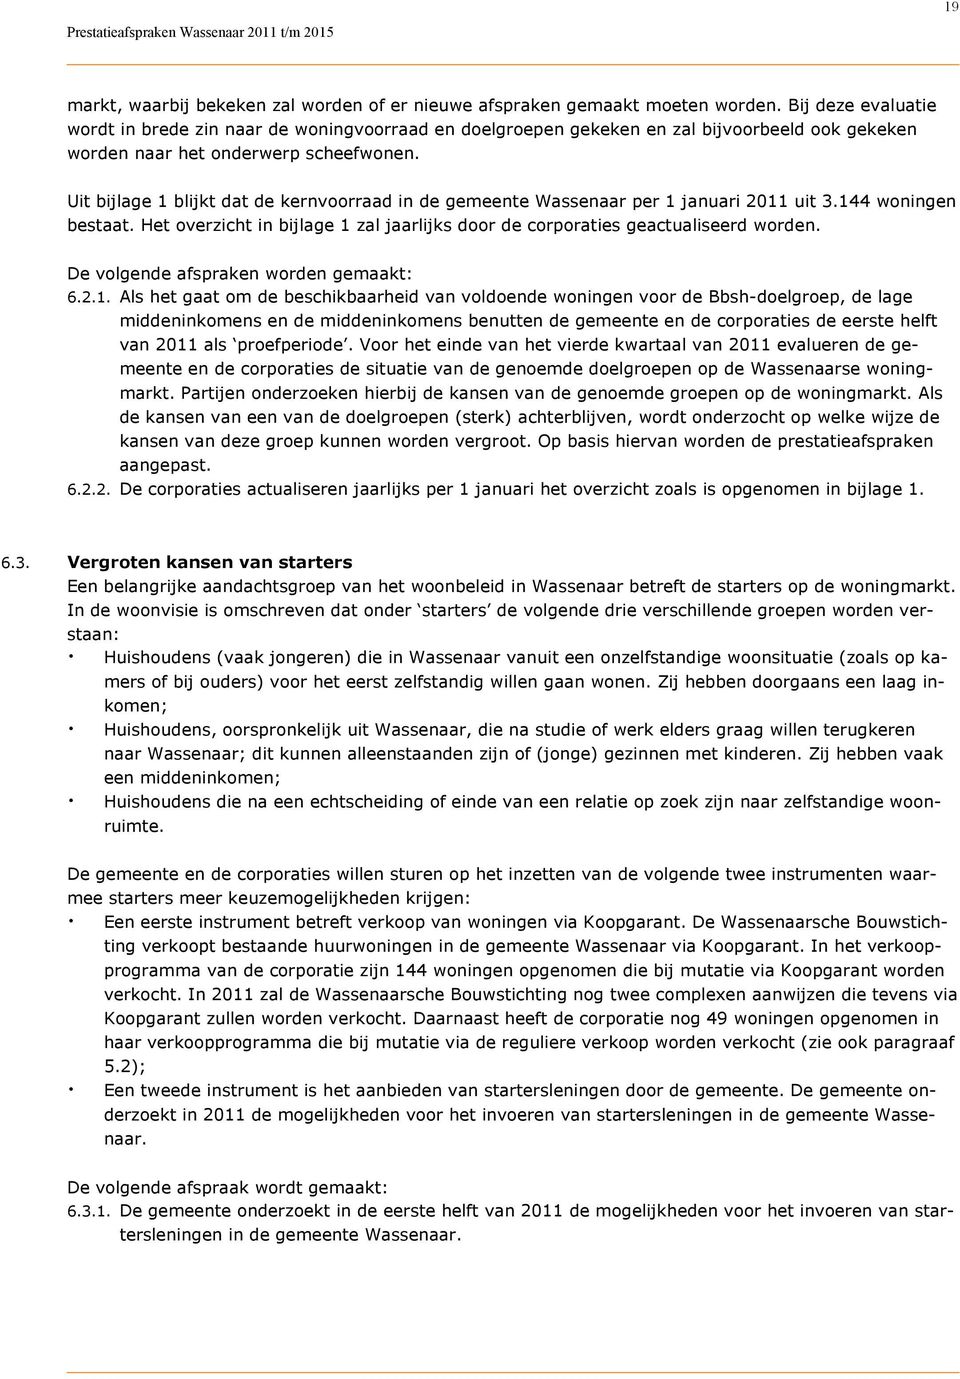 Uit bijlage 1 blijkt dat de kernvoorraad in de gemeente Wassenaar per 1 januari 2011 uit 3.144 woningen bestaat. Het overzicht in bijlage 1 zal jaarlijks door de corporaties geactualiseerd worden.